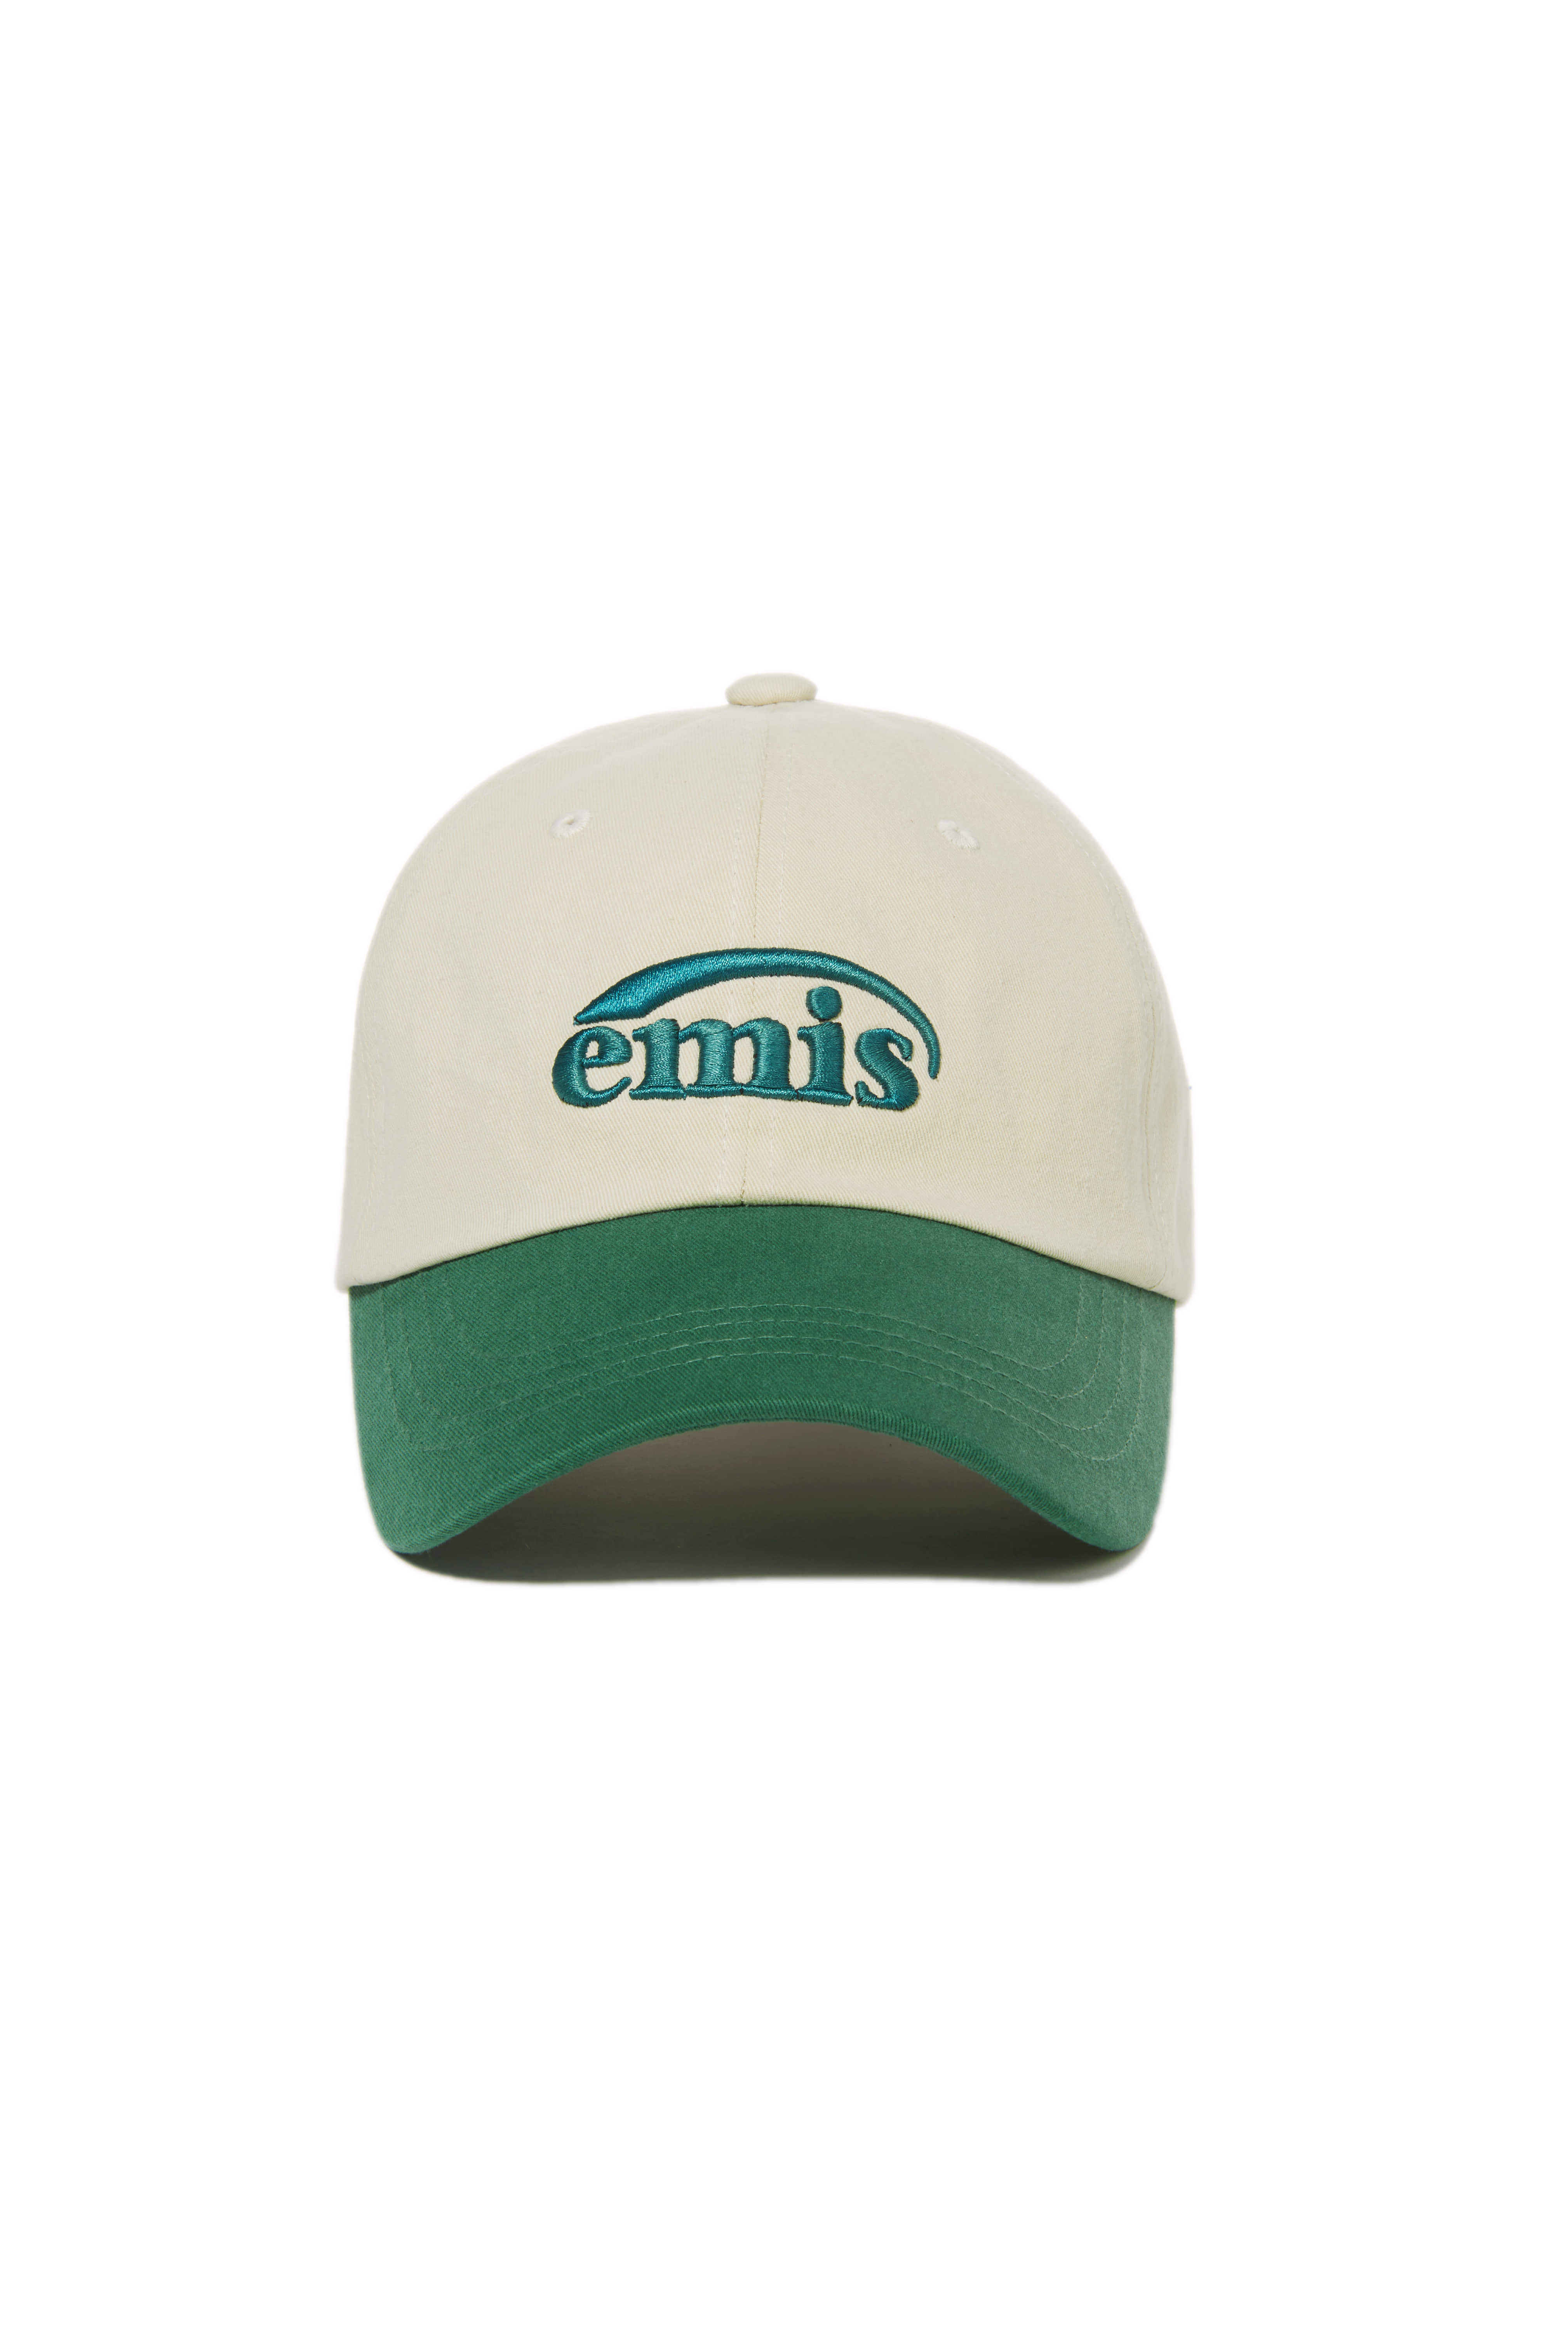 NEW LOGO EMIS CAP-BEIGE/GREEN